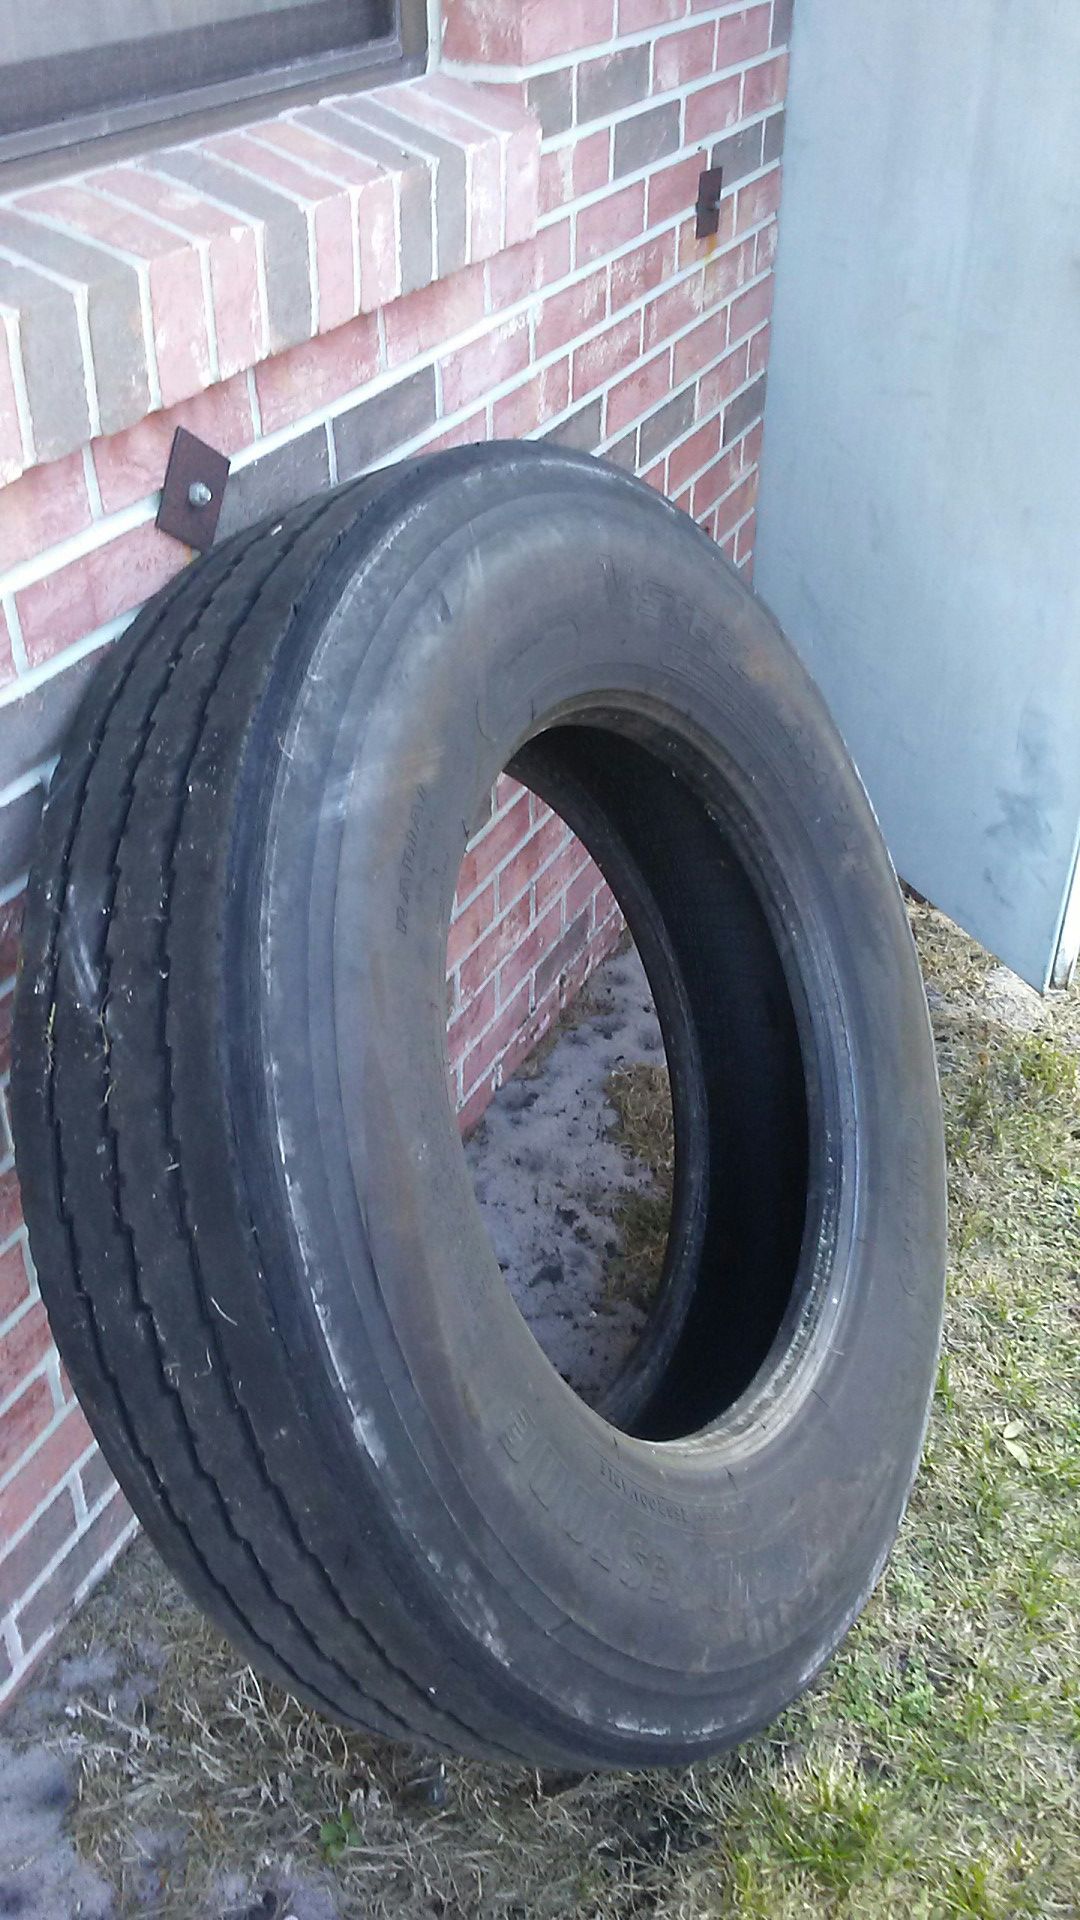 Semi-truck tire